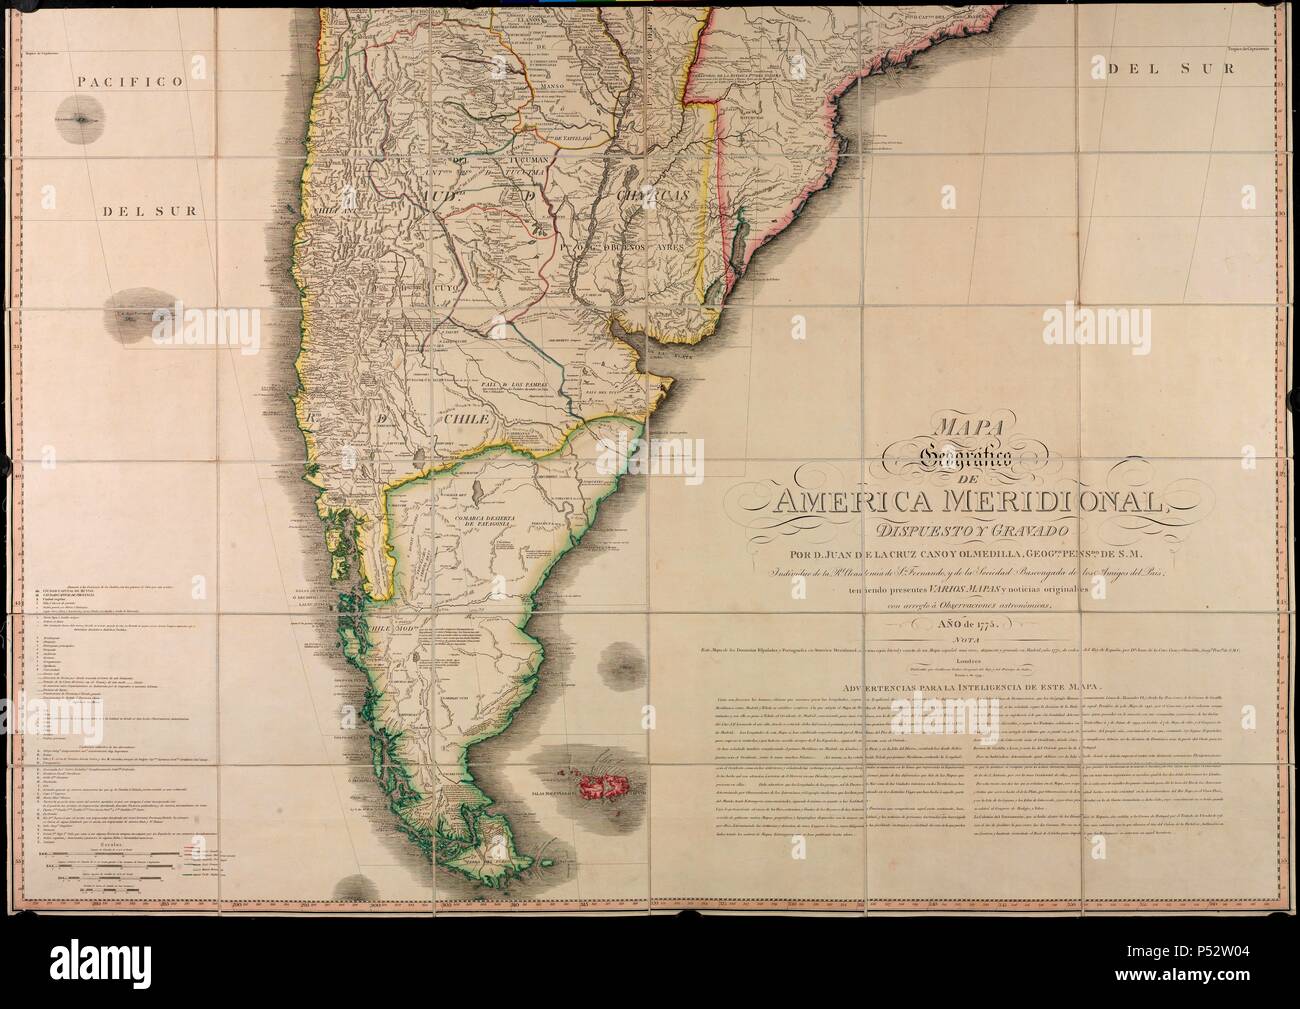 MAPA GEOGRAFICO DE AMERICA MERIDIONAL - 1755. Auteur : CRUZ CANO Y OLMEDILLA JUAN / William Faden. Emplacement : BIBLIOTECA NACIONAL-COLECCION, MADRID, ESPAGNE. Banque D'Images